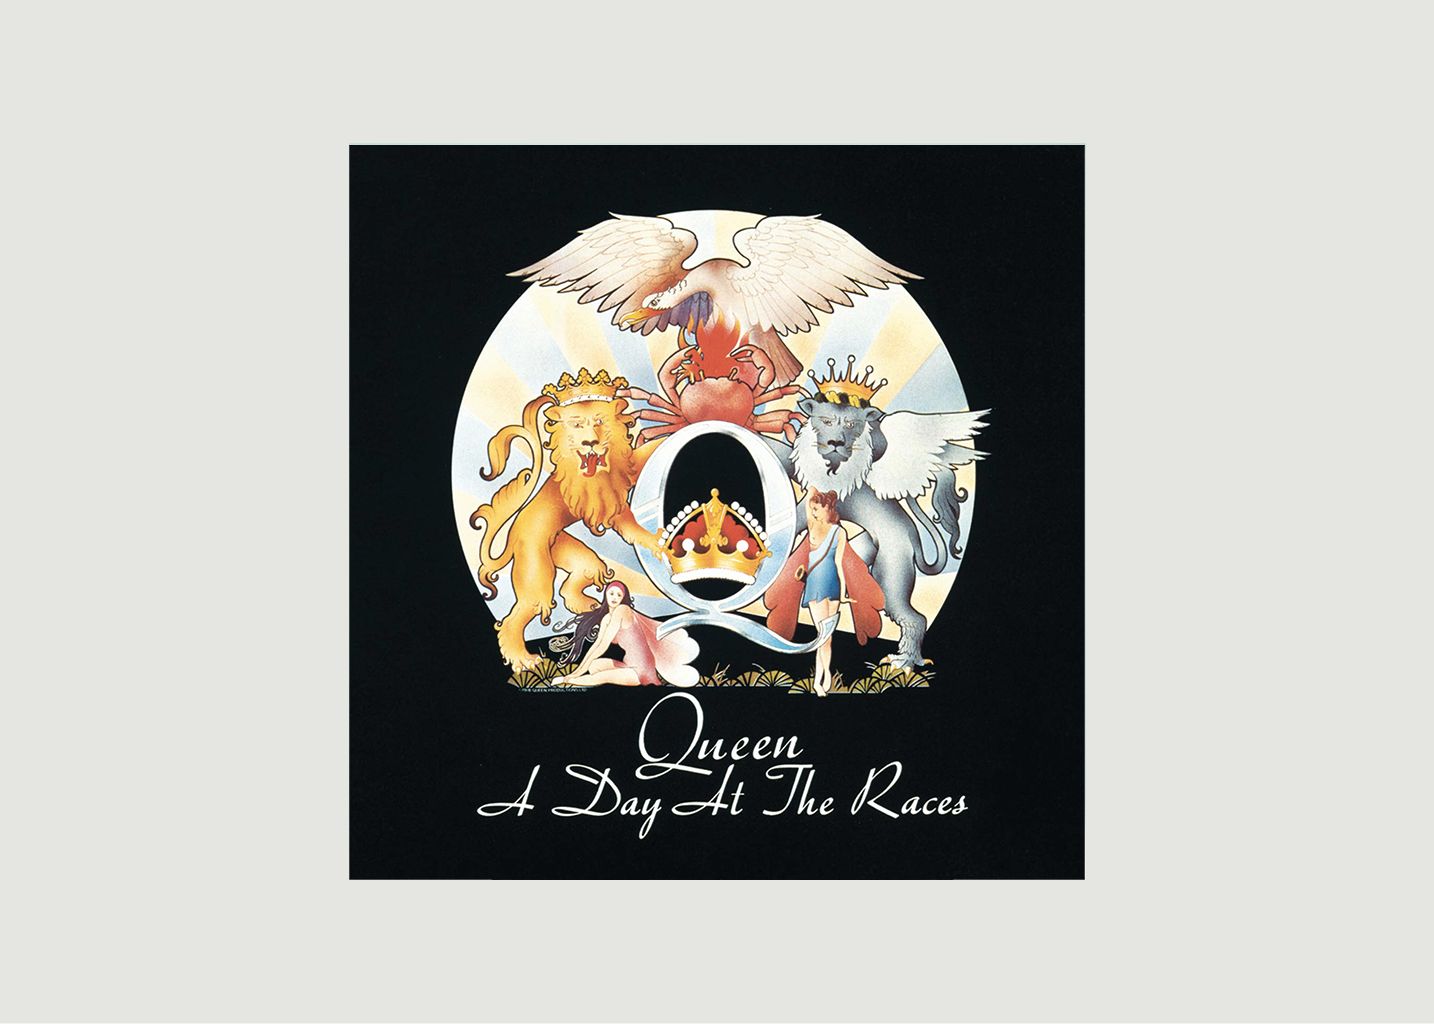 Vinyle A Day At The Races - Queen - La vinyl-thèque idéale